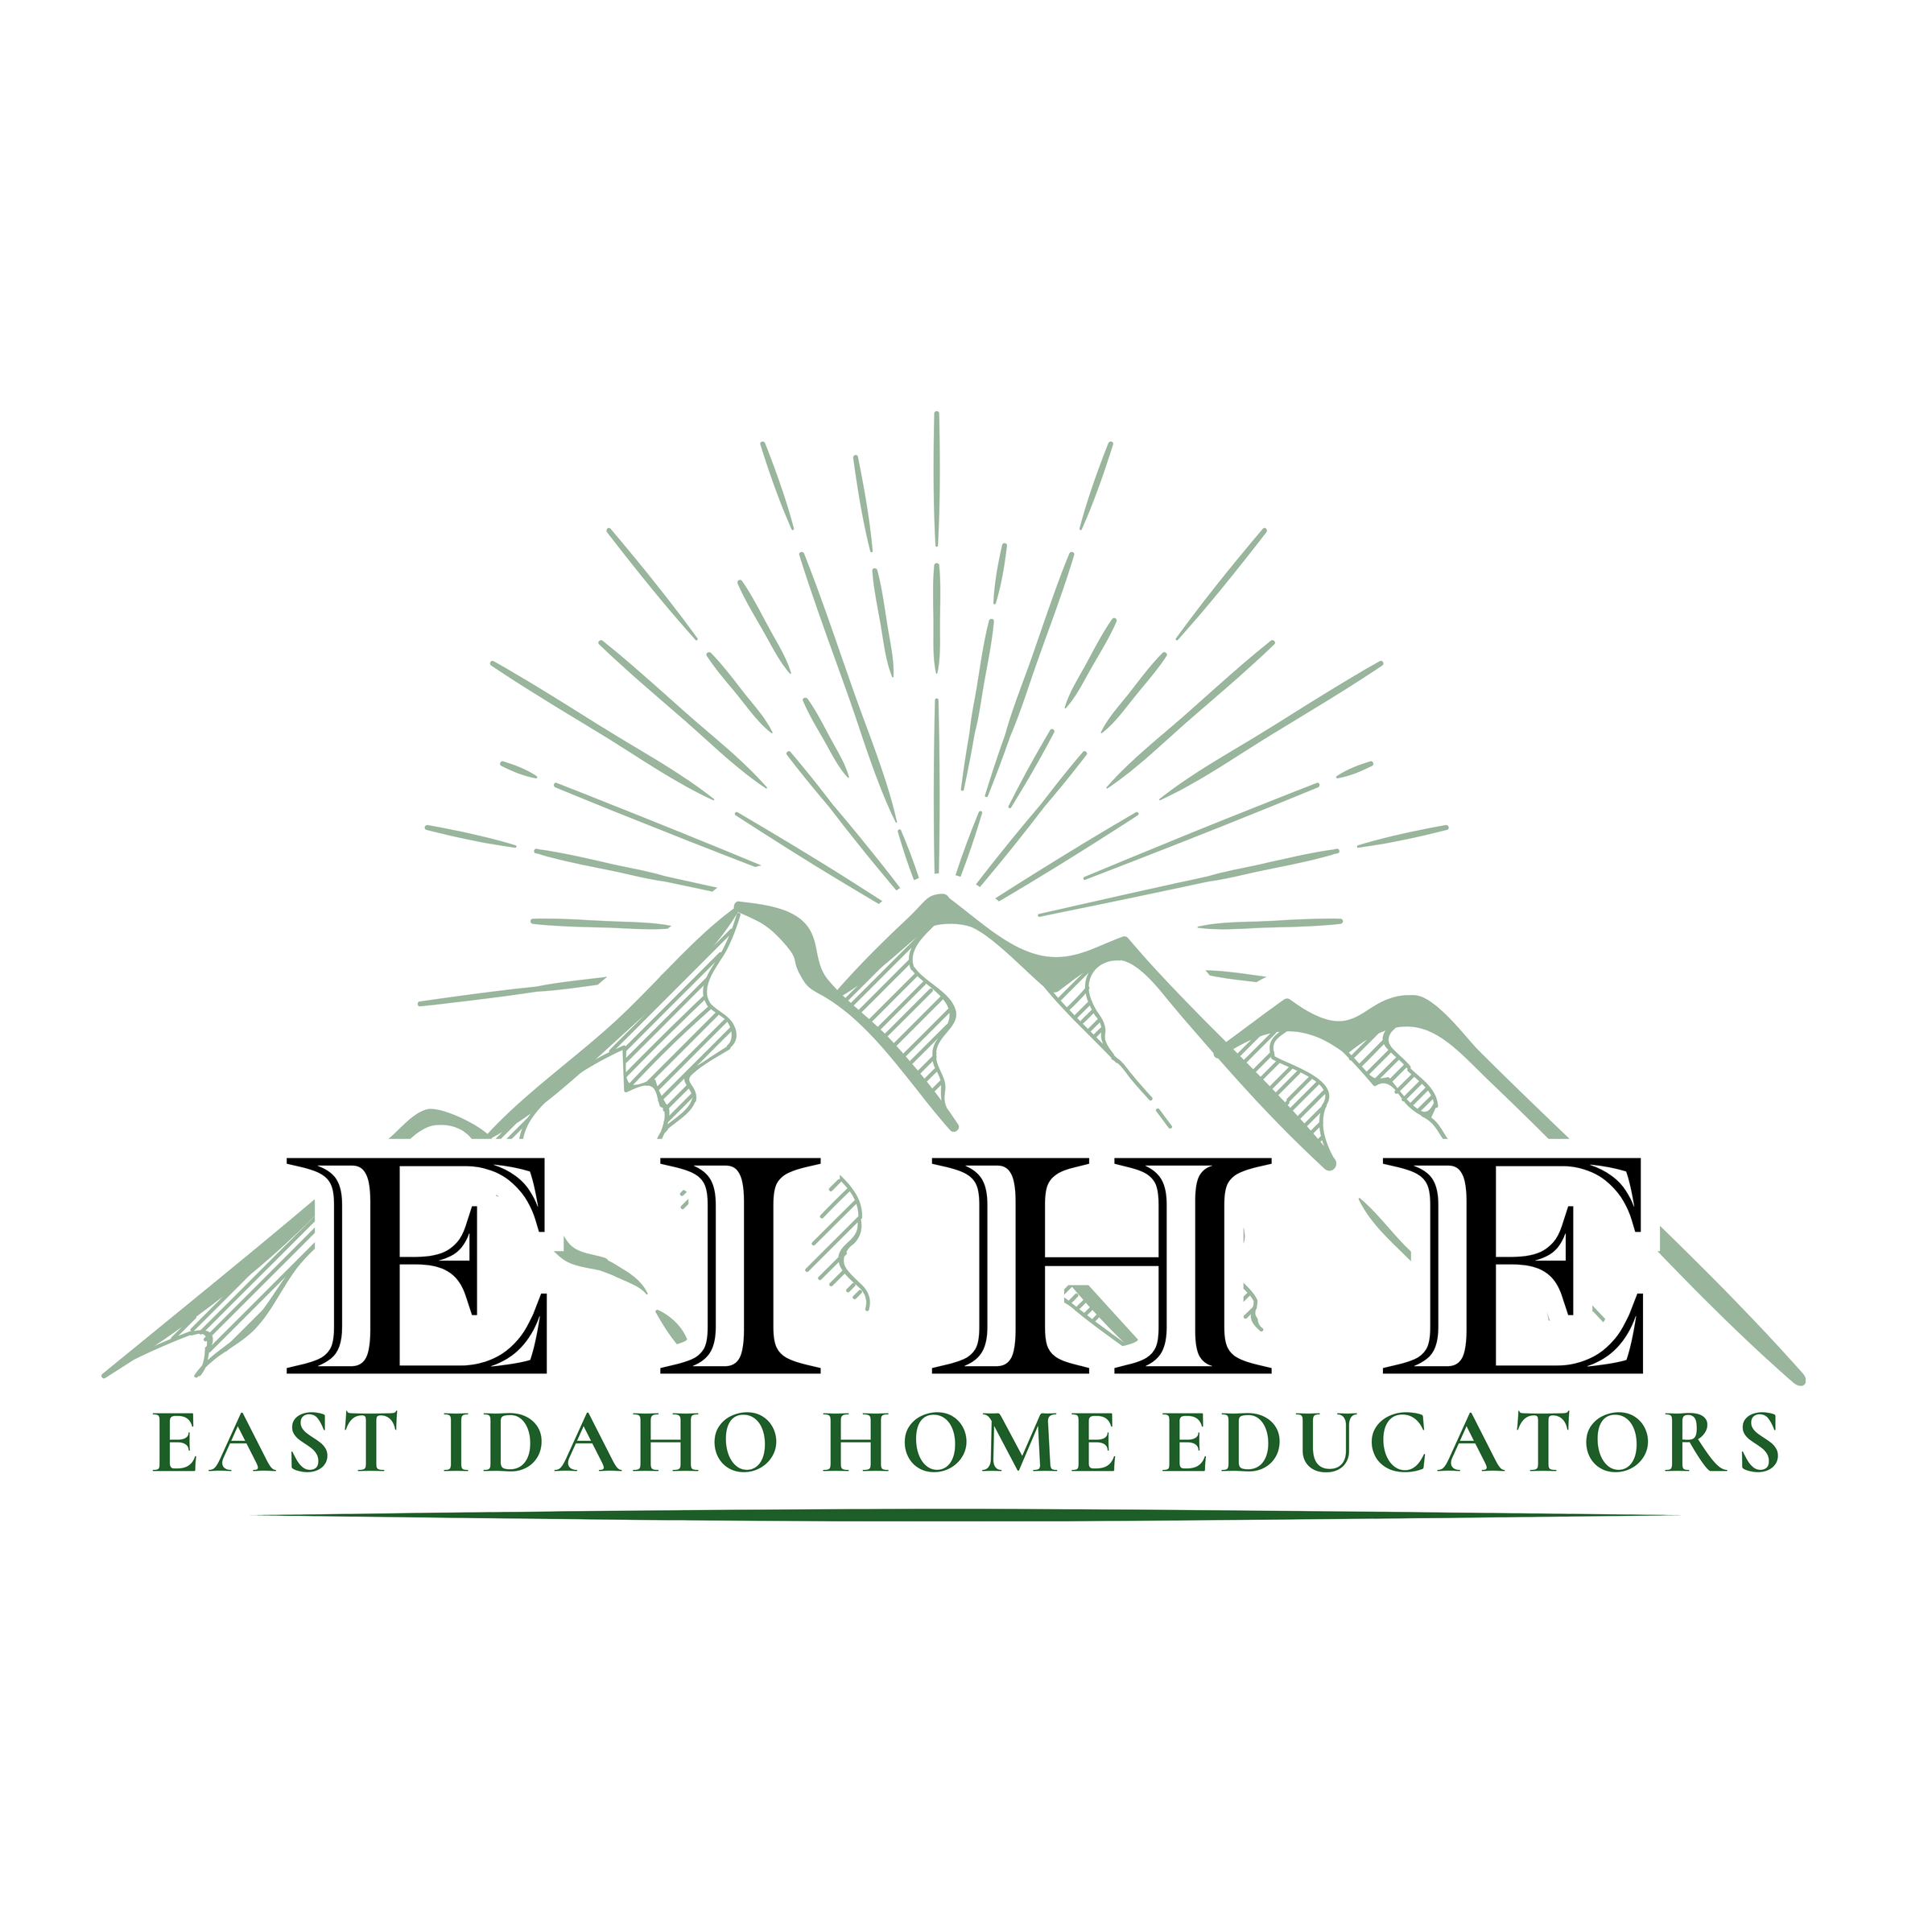 East Idaho Home Educators logo